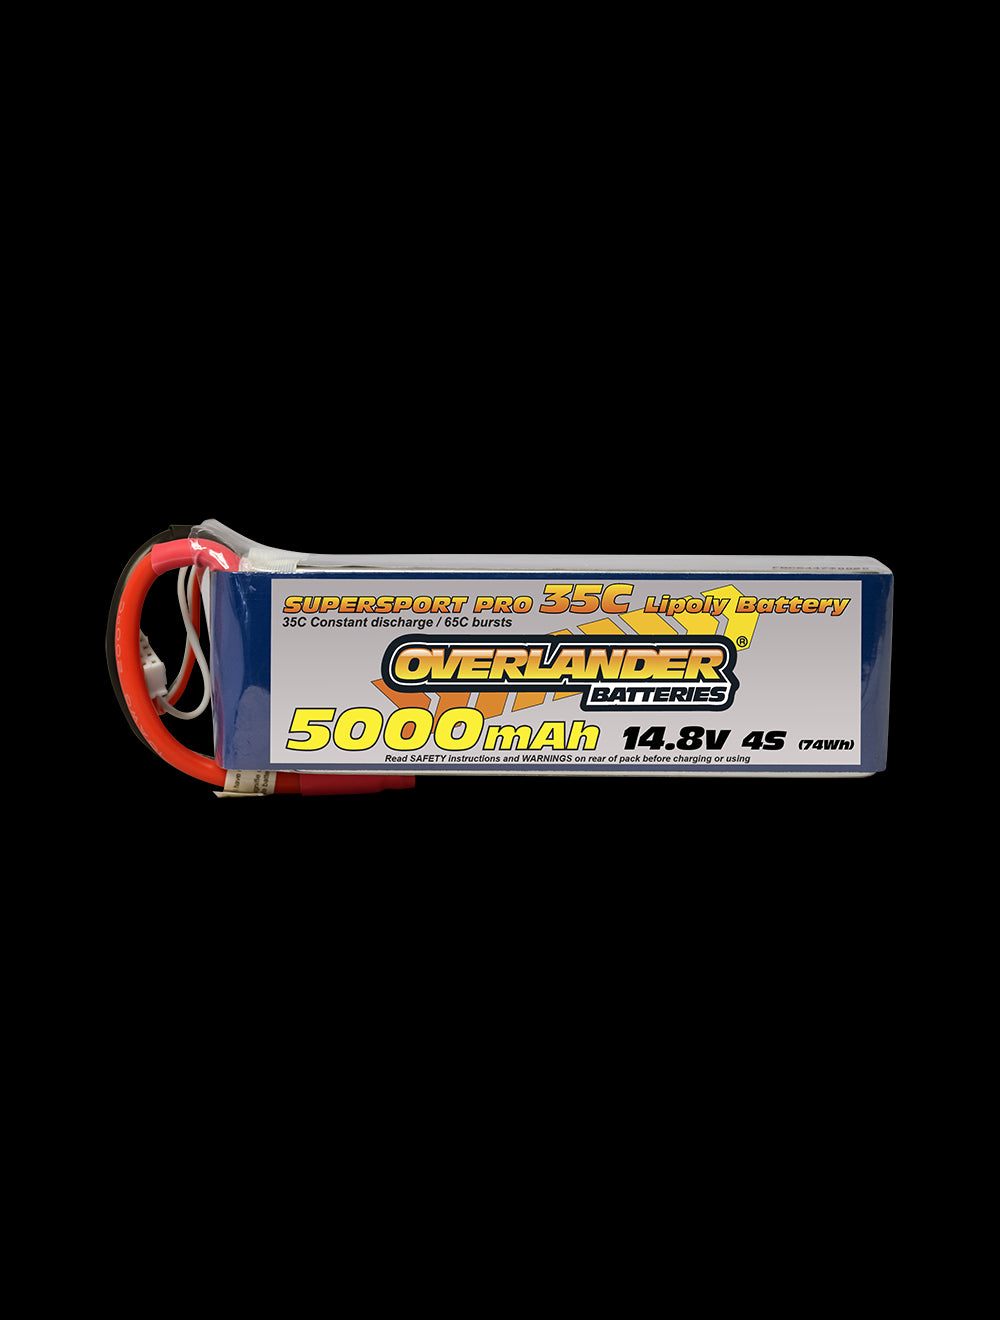 Overlander 5000mAh 14.8V 4S 35C Supersport Pro LiPo Battery - EC3 Connector 2578